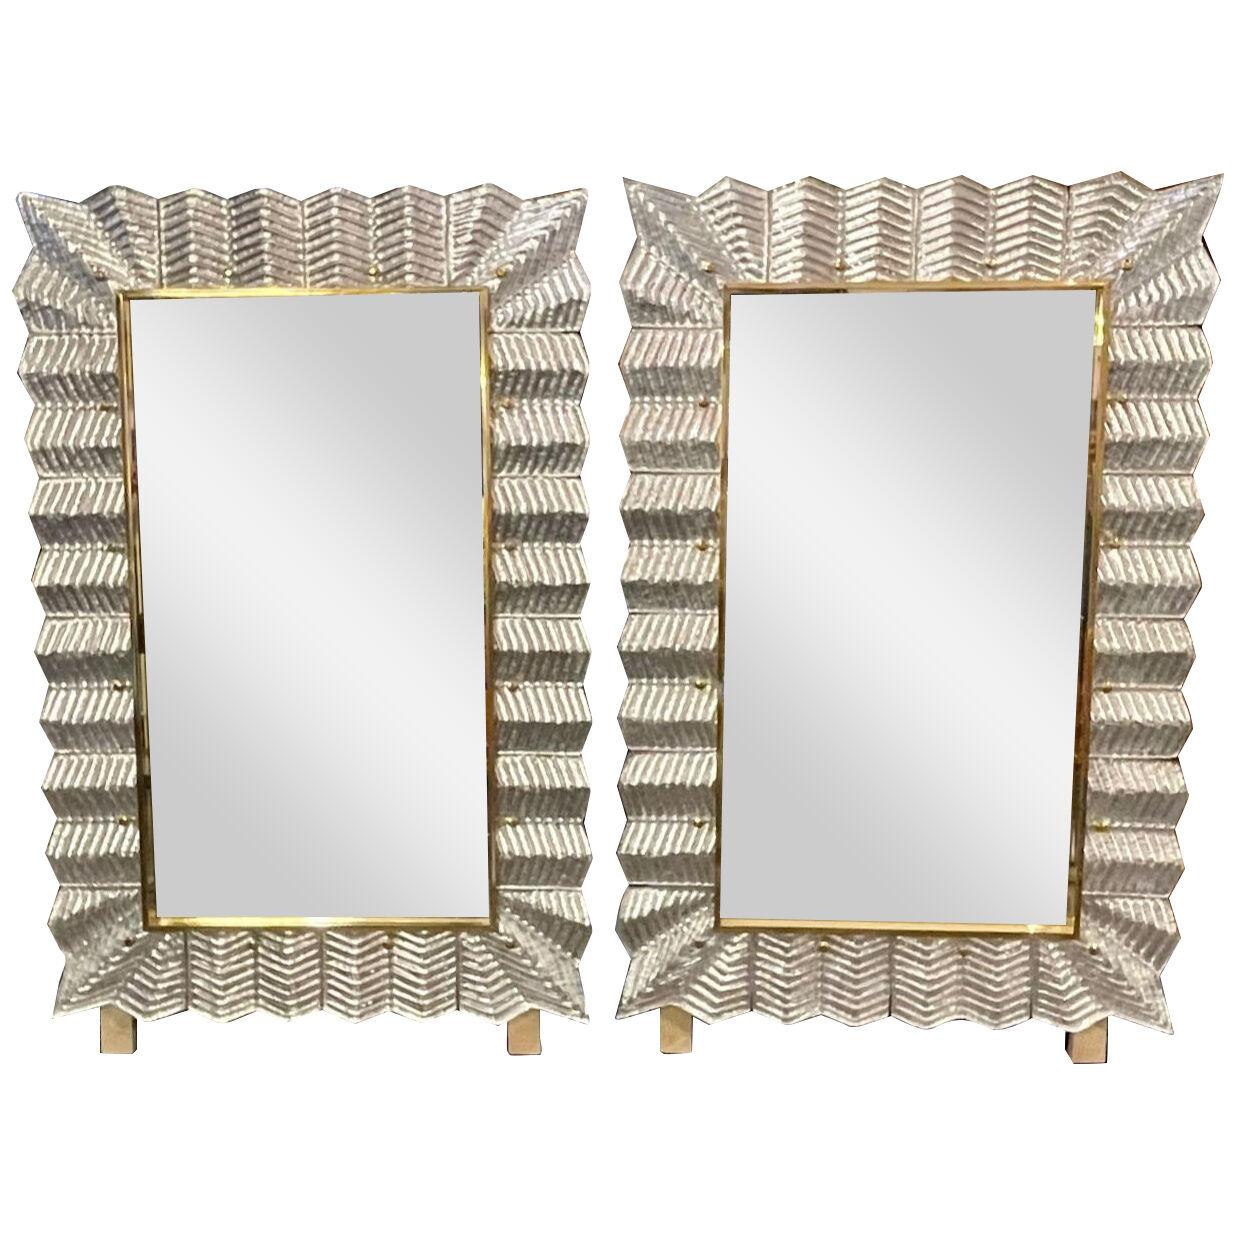 Murano Zip-Zag Mirrors